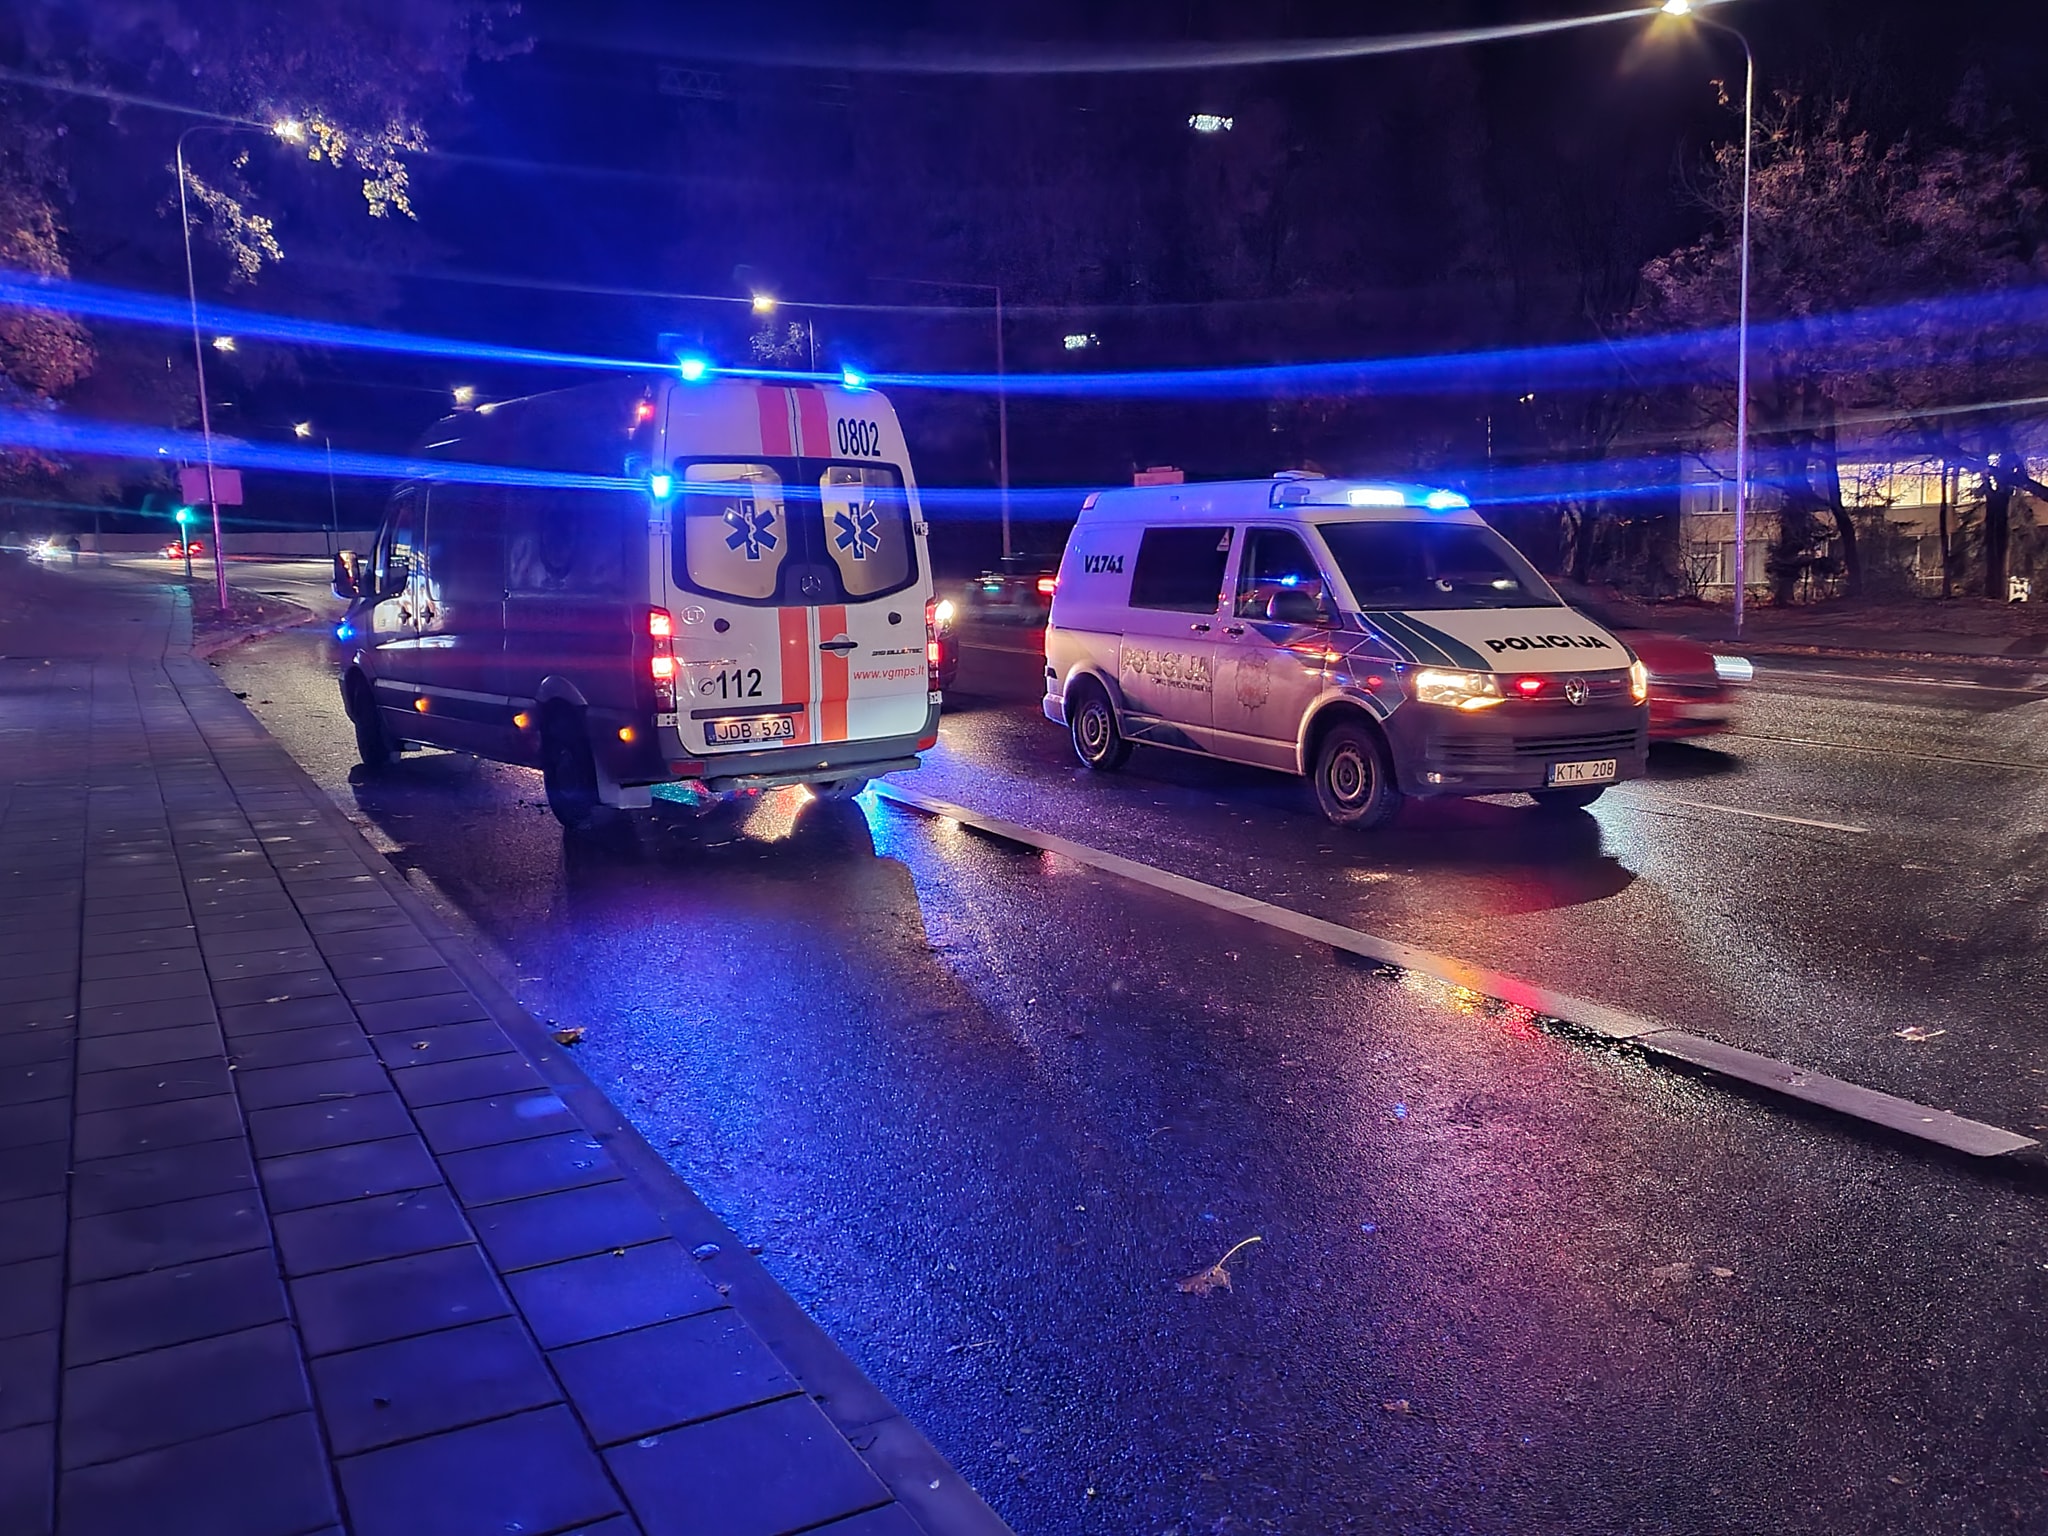 Vilniuje mire „Bolt pevezejas vezdamas klienta prarado samone ir atsitrenke i BMW 2